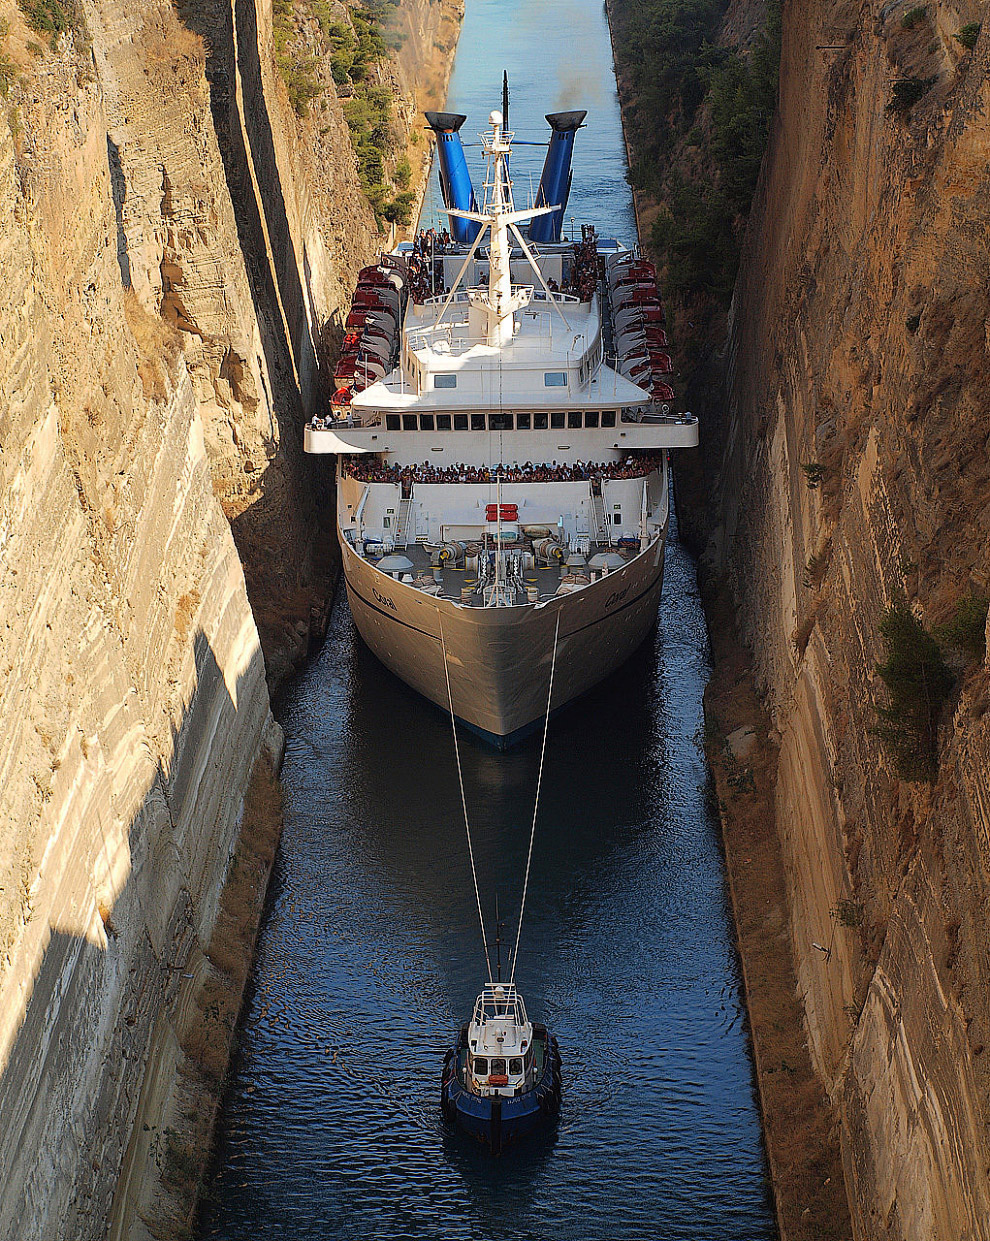 Коринфский судоходный канал – самый узкий в мире